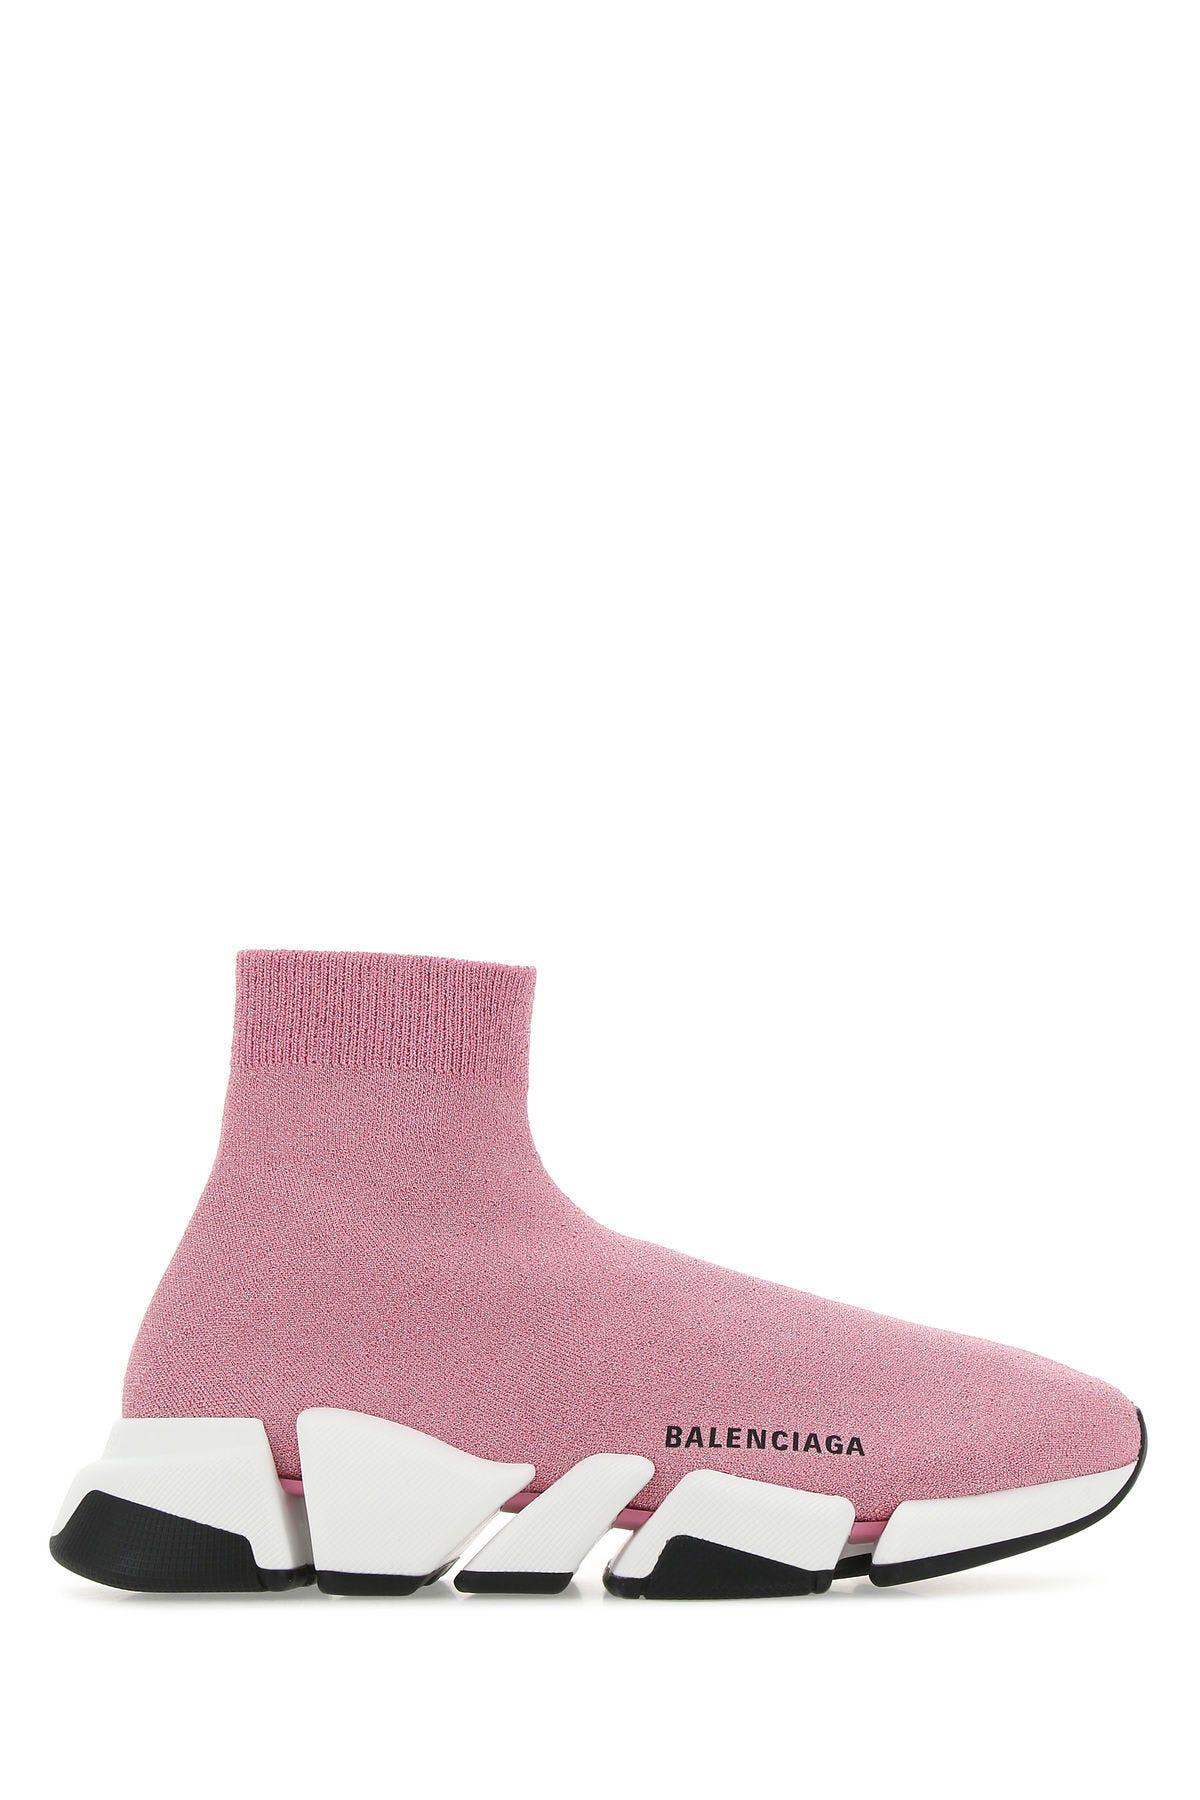 Cheap Jordan Outlet Shop Sale Online - filippa k lace-up sneaker | On - Balenciaga Cloudfeel Slip